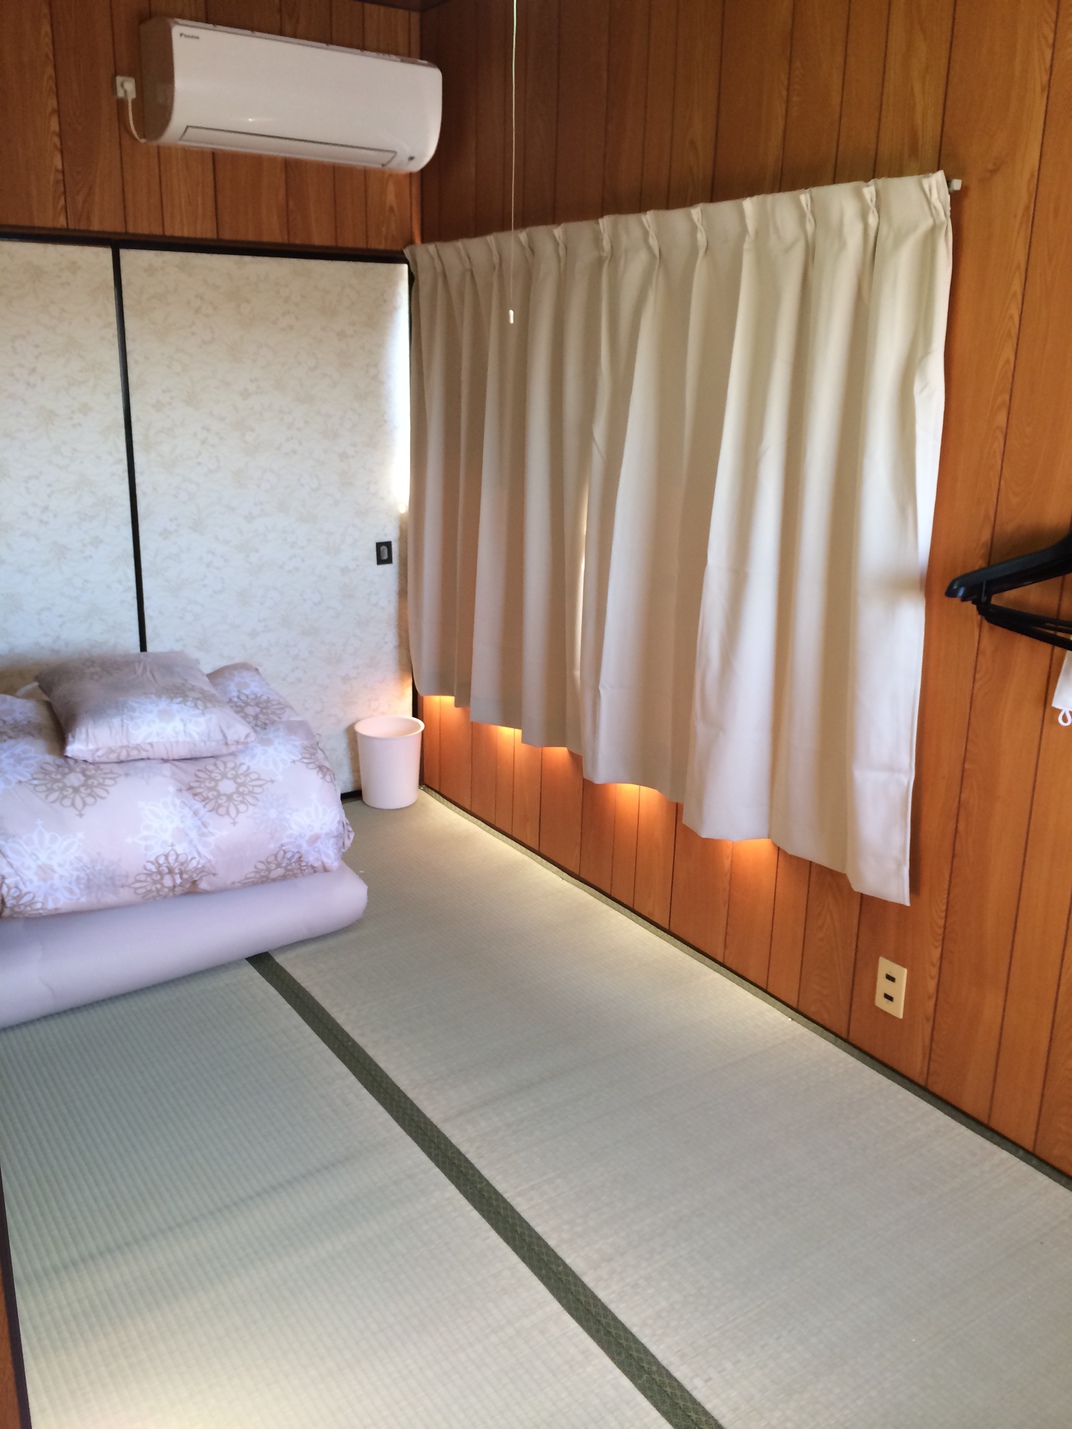 Guest House Genza<Shodoshima> Guest House Genza<Shodoshima>